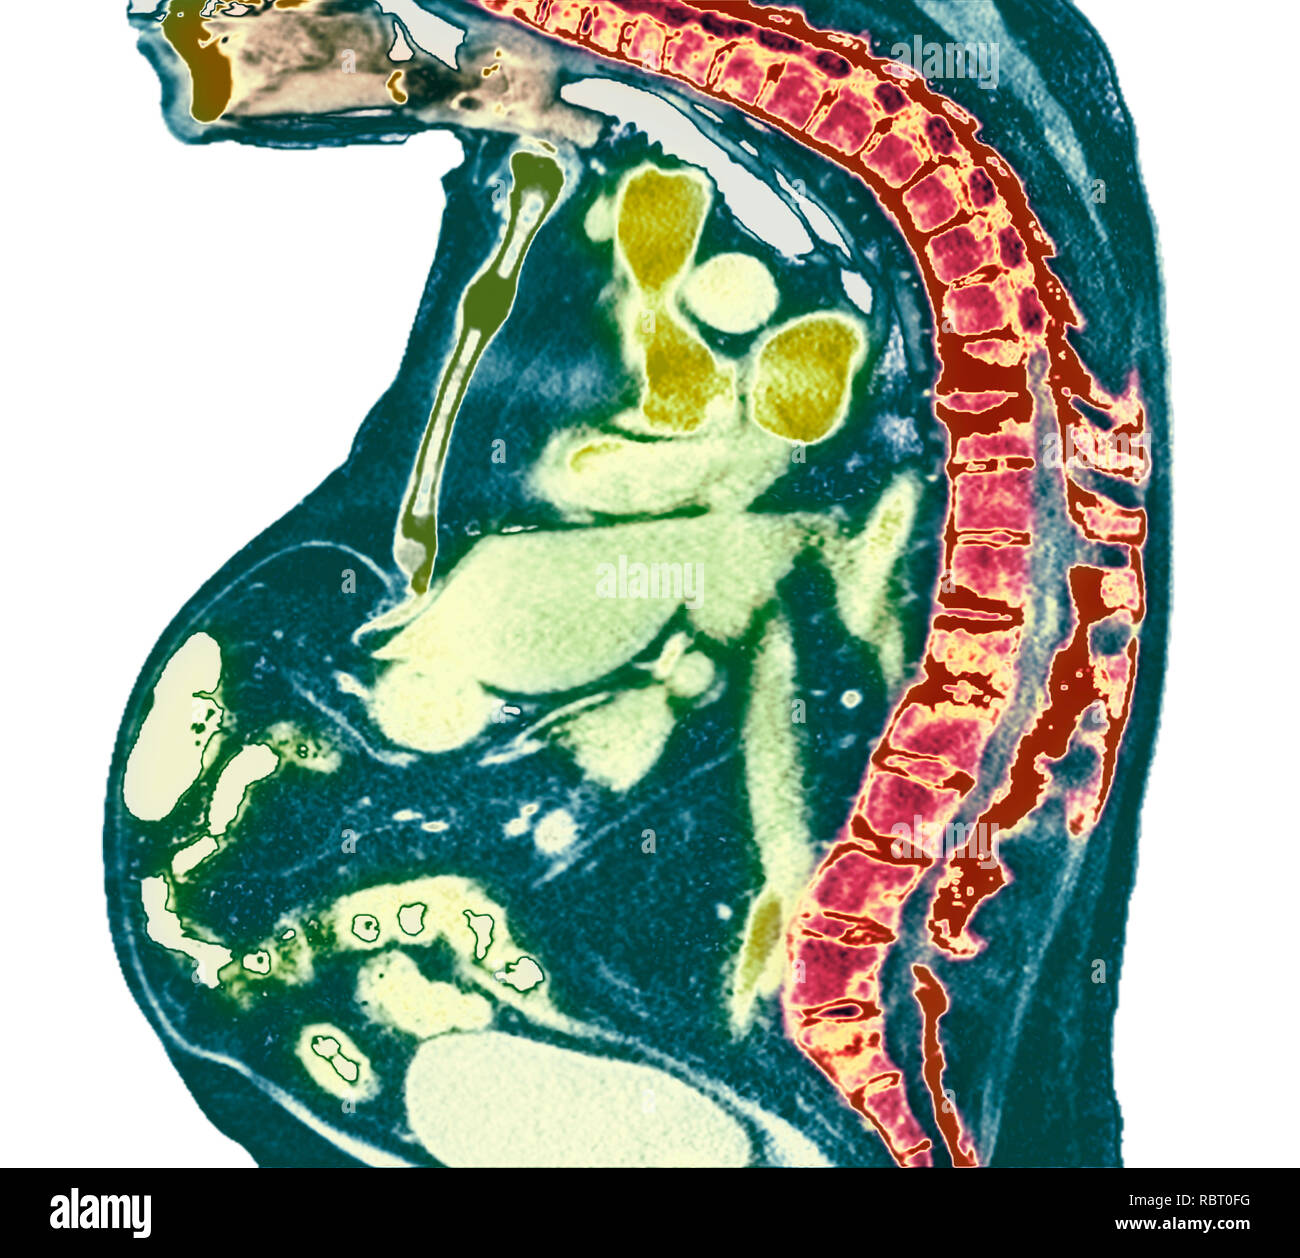 Spina dorsale nella spondilite anchilosante. Colorato X-ray di una sezione attraverso la colonna vertebrale toracica di un 74-anno-vecchio paziente di sesso maschile con spondilite anchilosante, sho Foto Stock